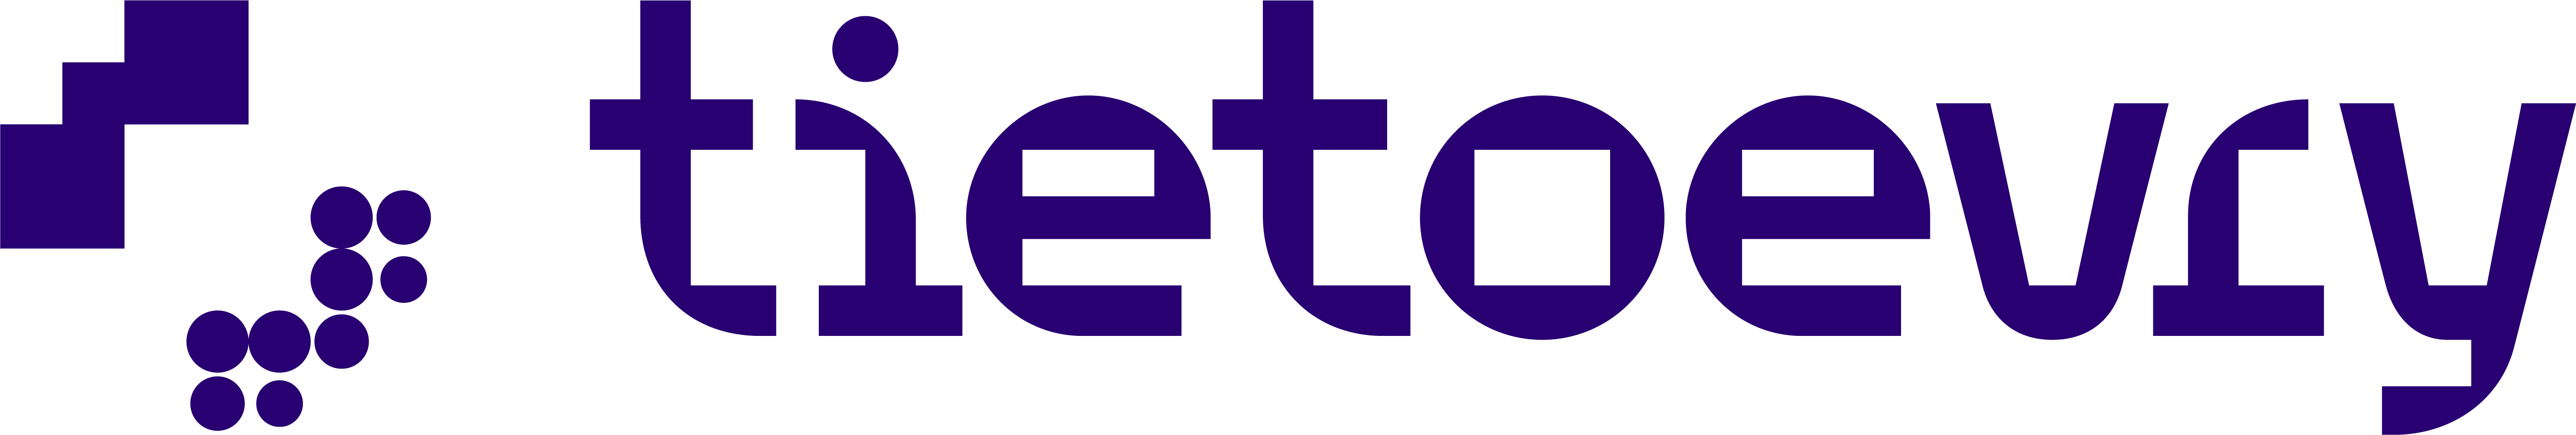 Логотип Tietoevry